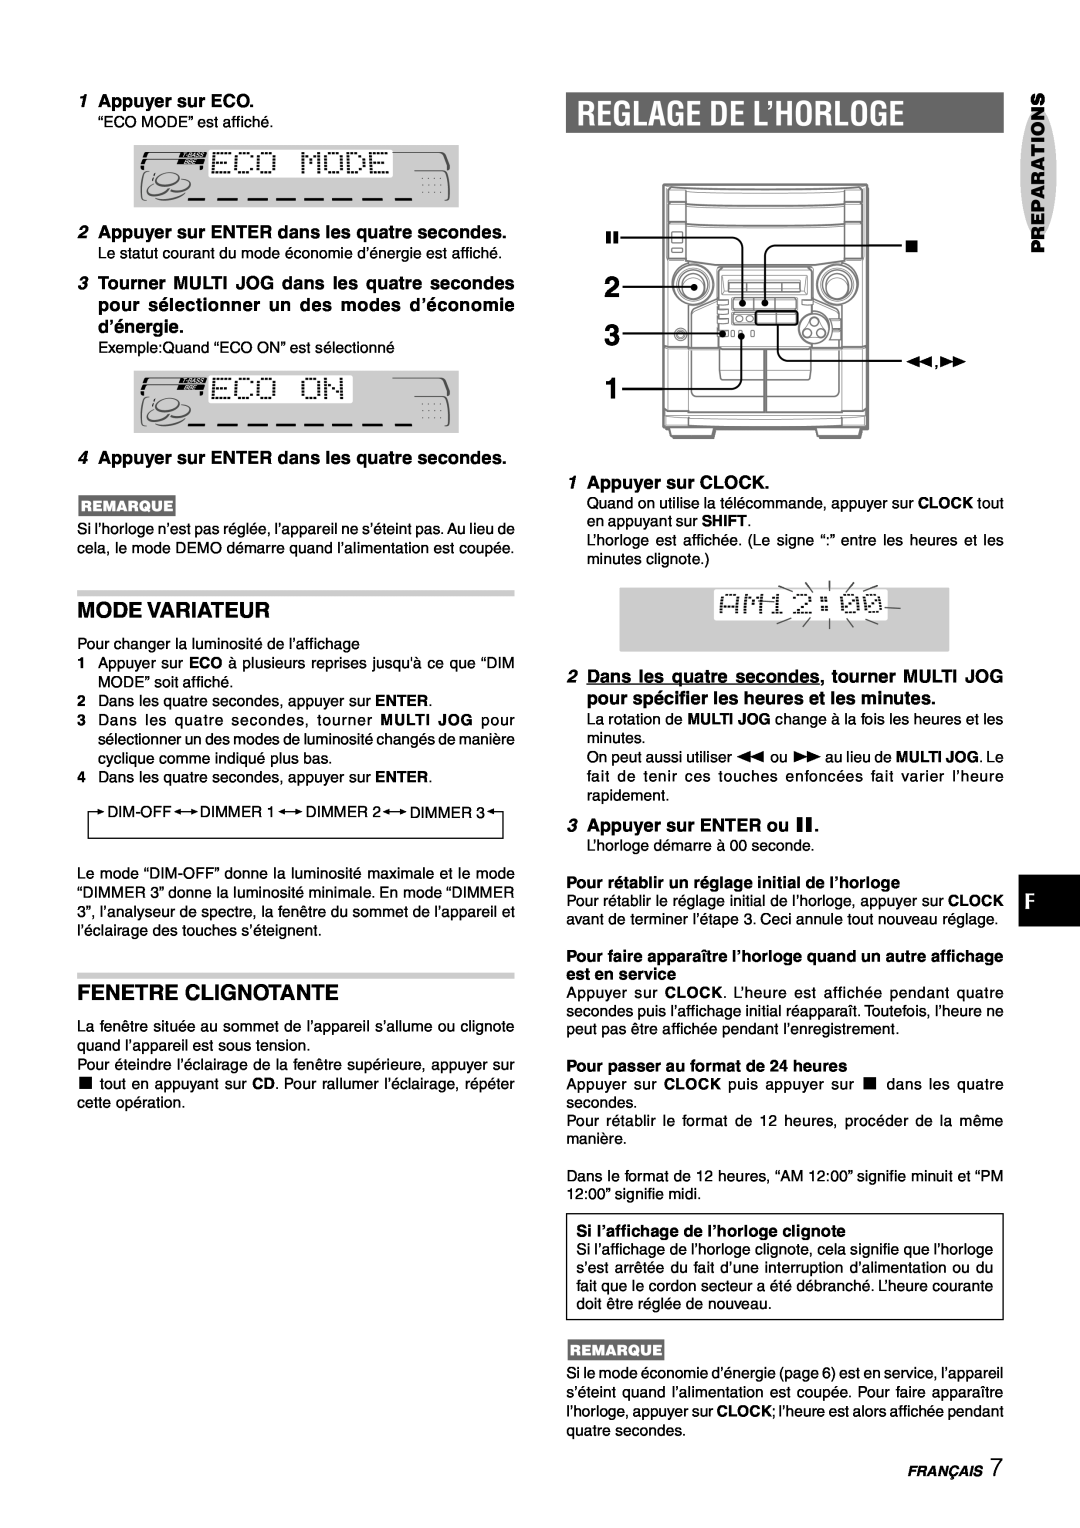 Aiwa CX-NAJ54 manual Reglage De L’Horloge, Mode Variateur, Fenetre Clignotante 